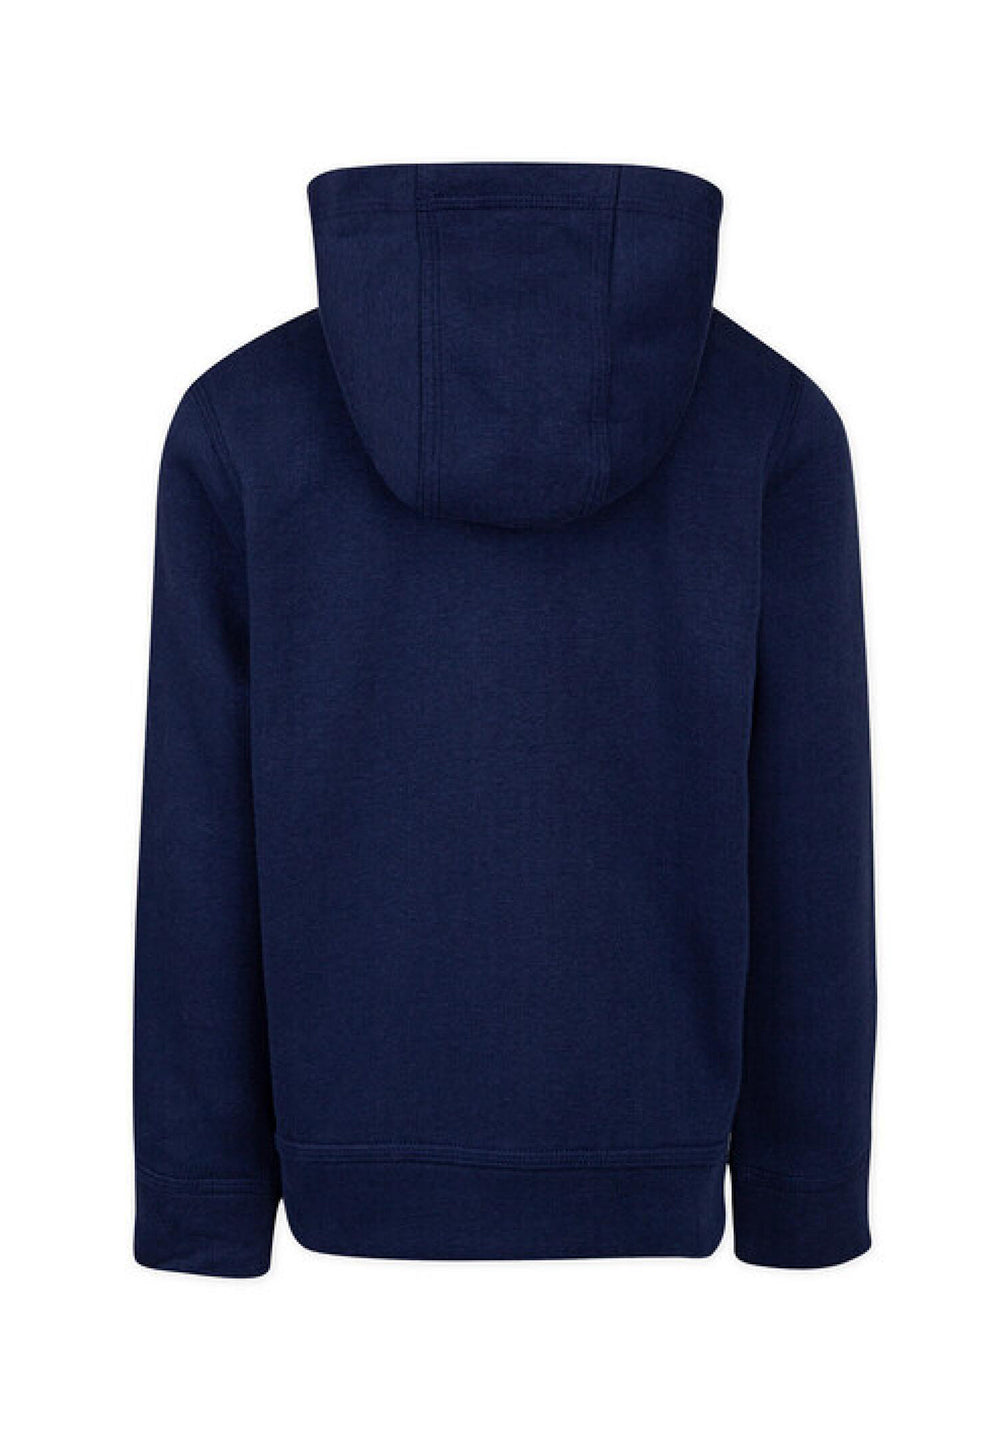 Navy blue zip sweatshirt for boys